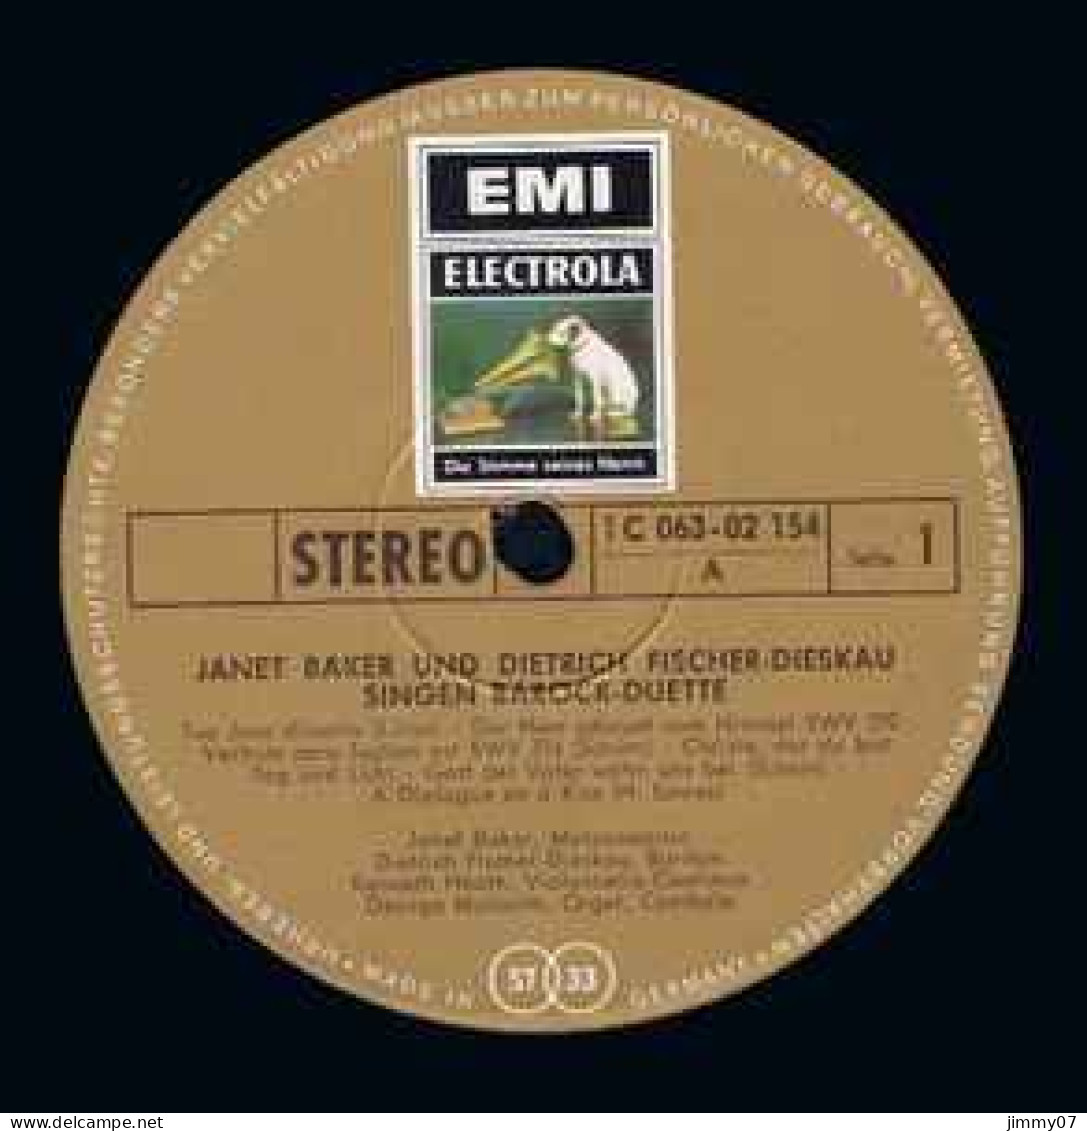 Janet Baker Und Dietrich Fischer-Dieskau - Singen Barockduette Live-Mitschnitt Aus Der Royal Festival Hall In London(LP) - Klassik